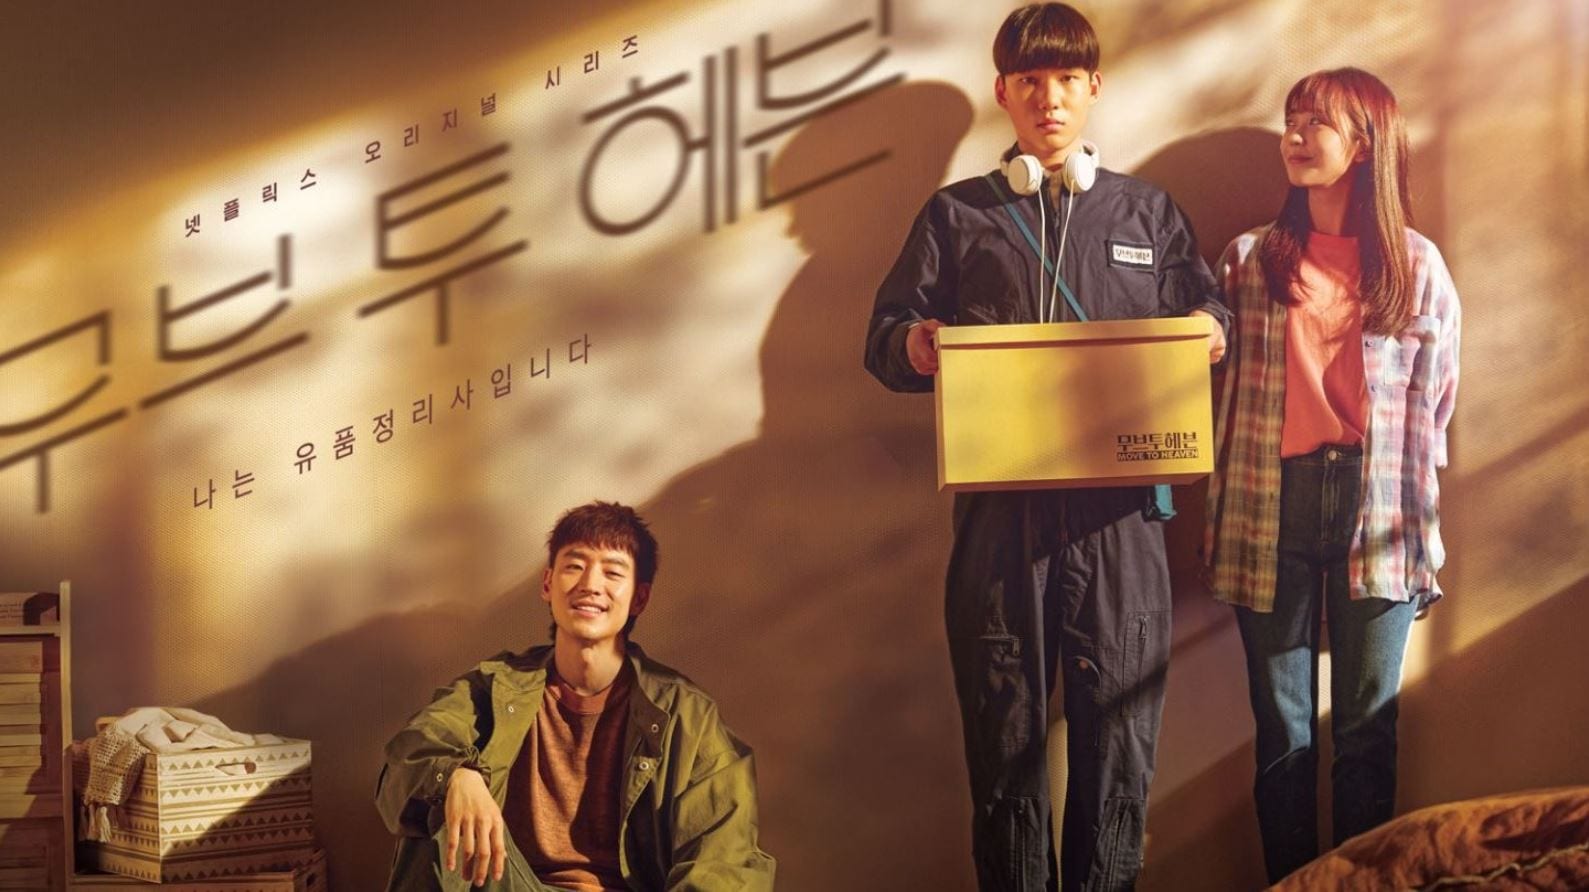 Film Move To Heaven Dibuat Sesuai Kisah Nyata Yang Terjadi Di Korea